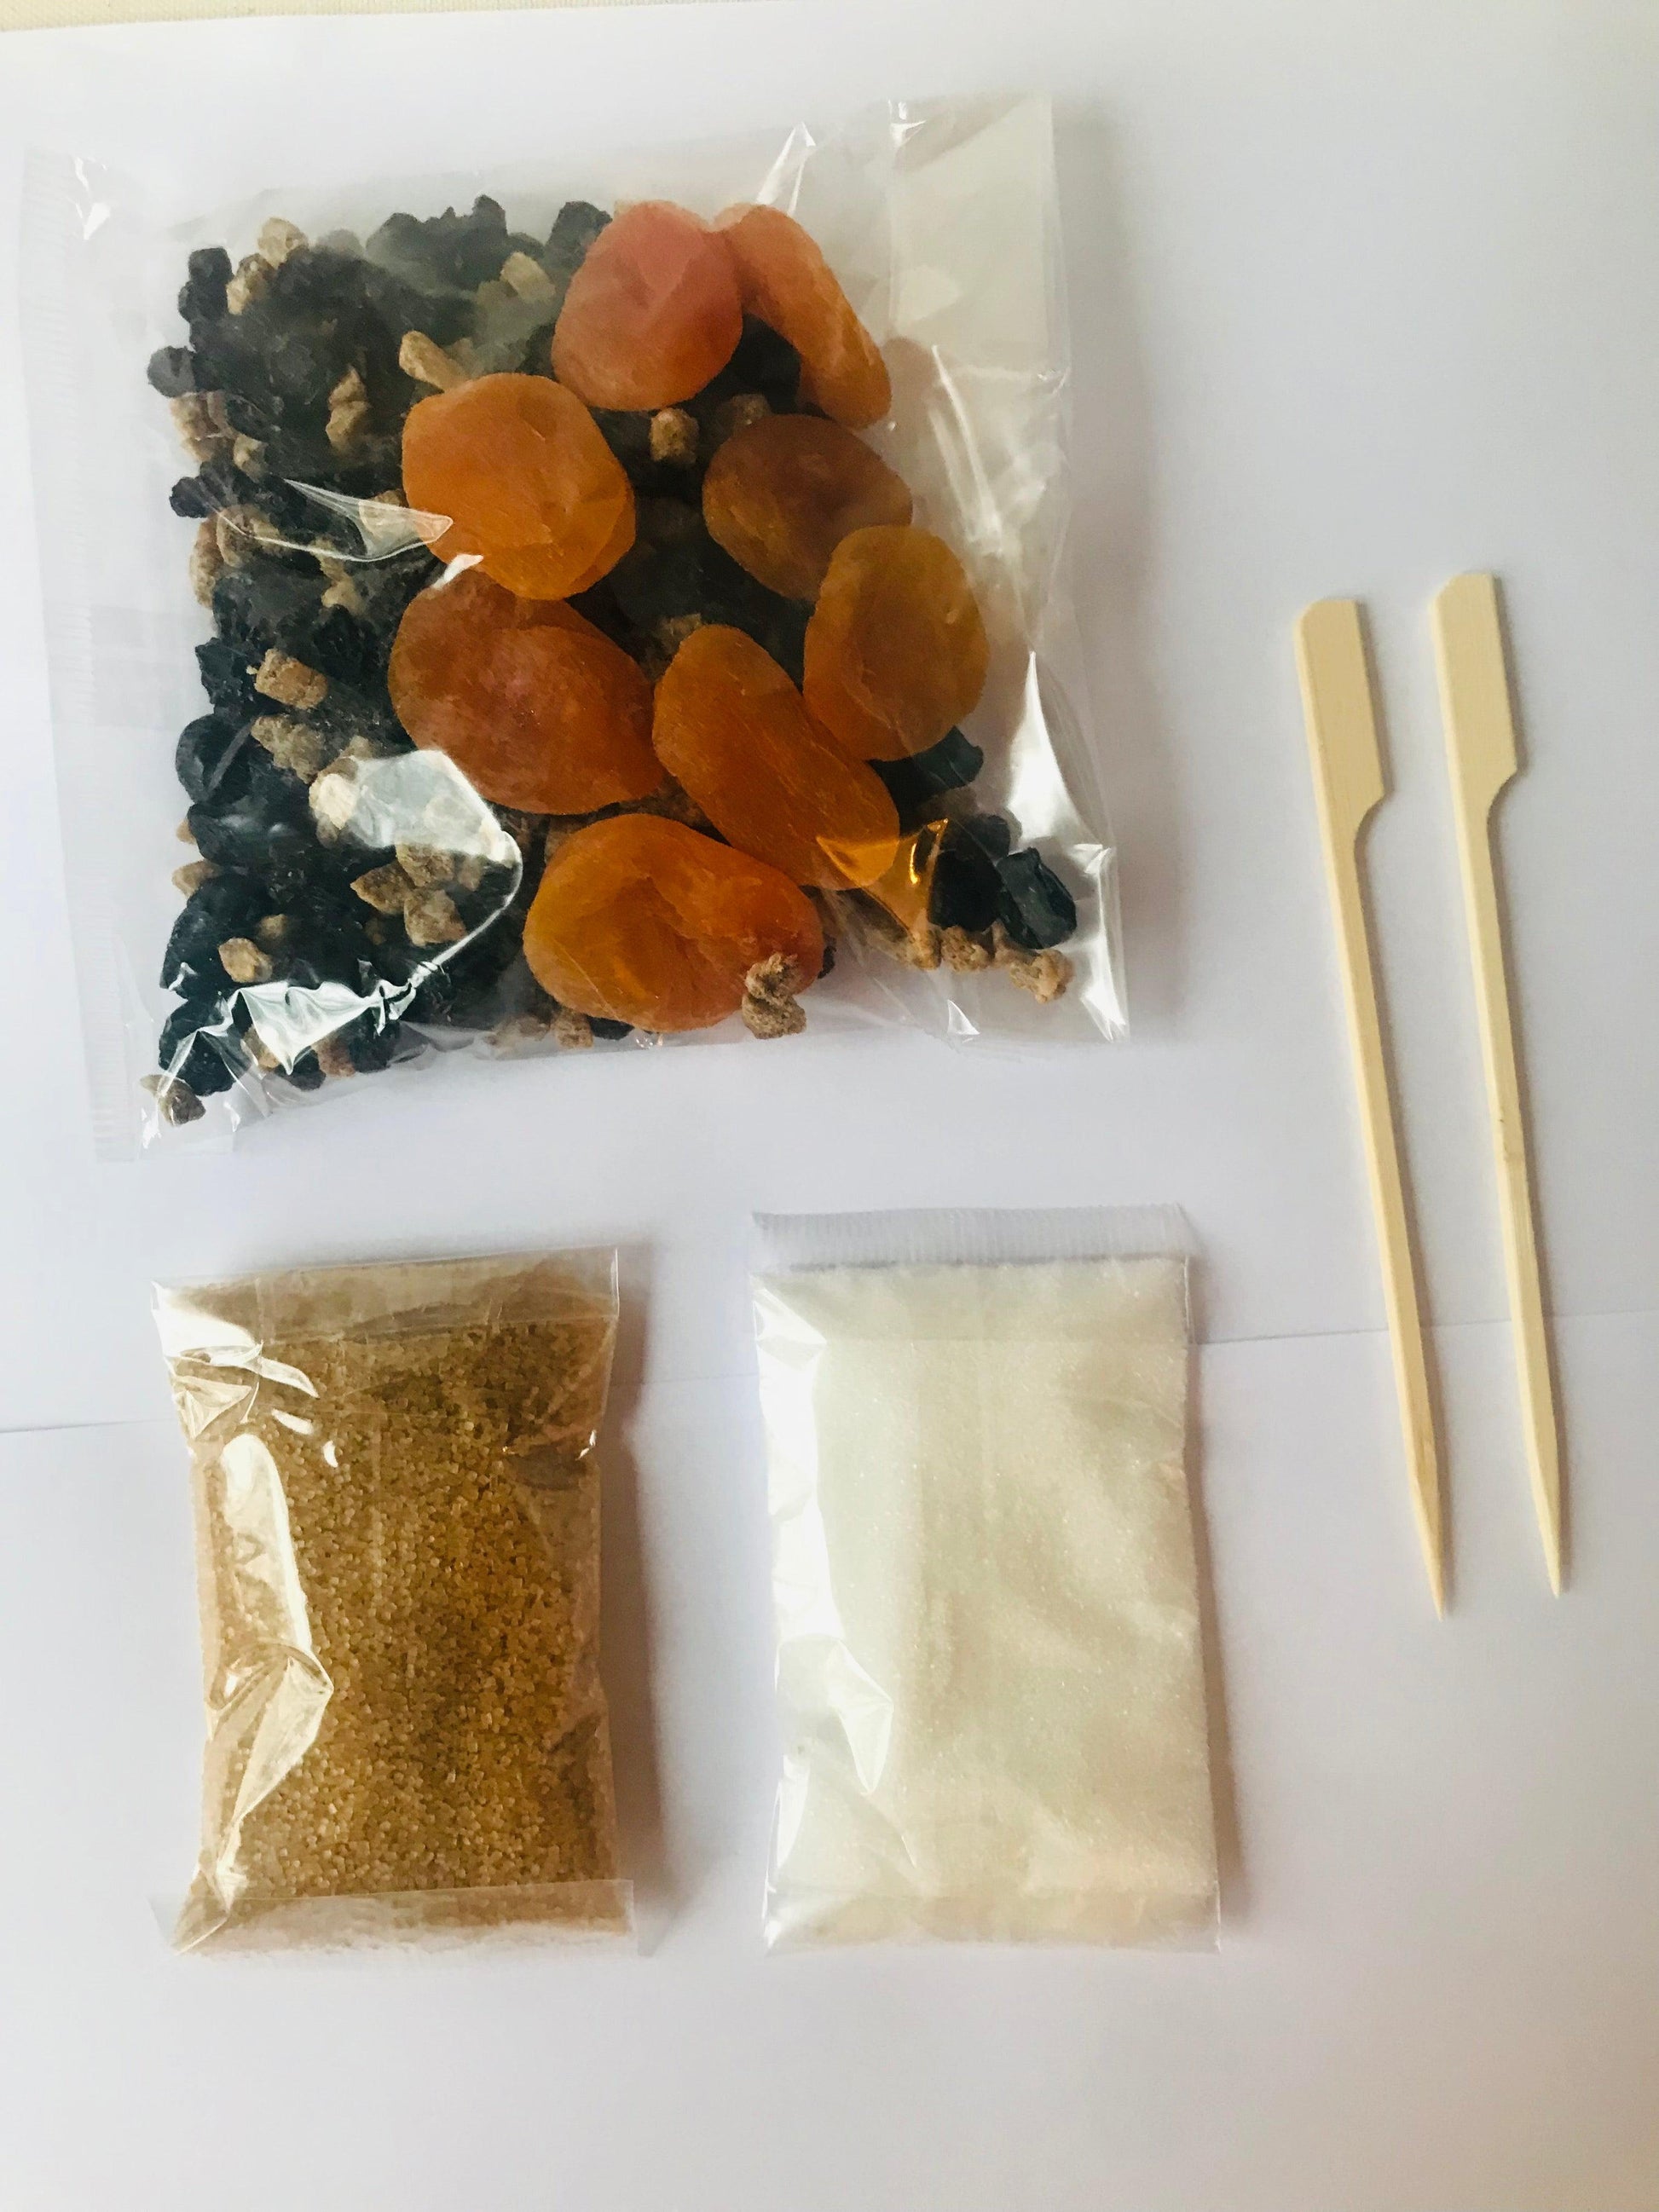 Sachet de préparation pour rhum arrangé : Abricot/figue/raisin/myrtilles/cannelle